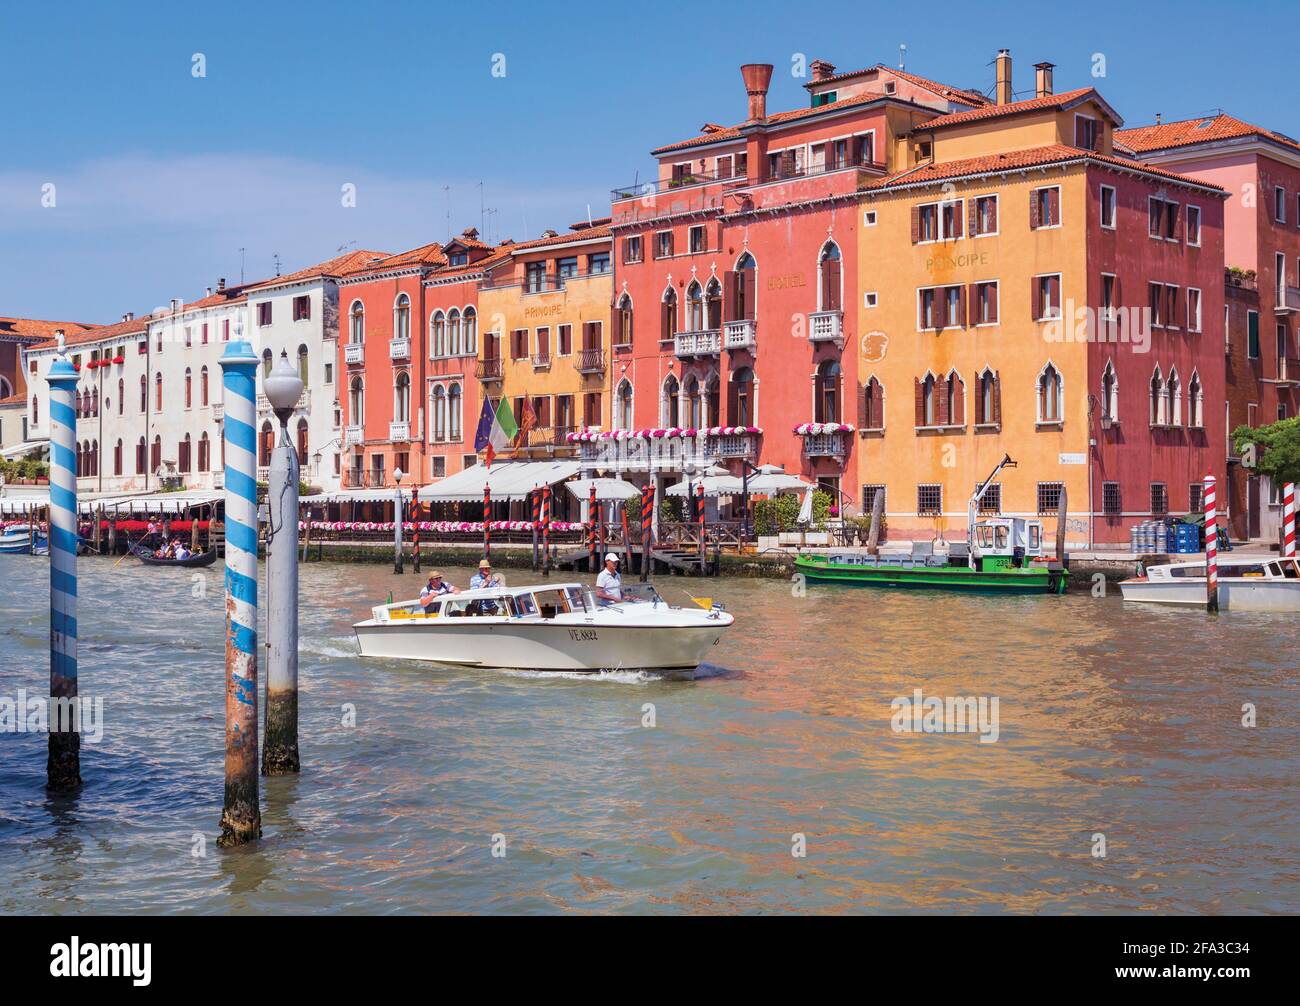 Venise, Italie. Un bateau-taxi avec des passagers descend le Grand Canal. Venise et sa lagune sont un site classé au patrimoine mondial de l'UNESCO. Banque D'Images